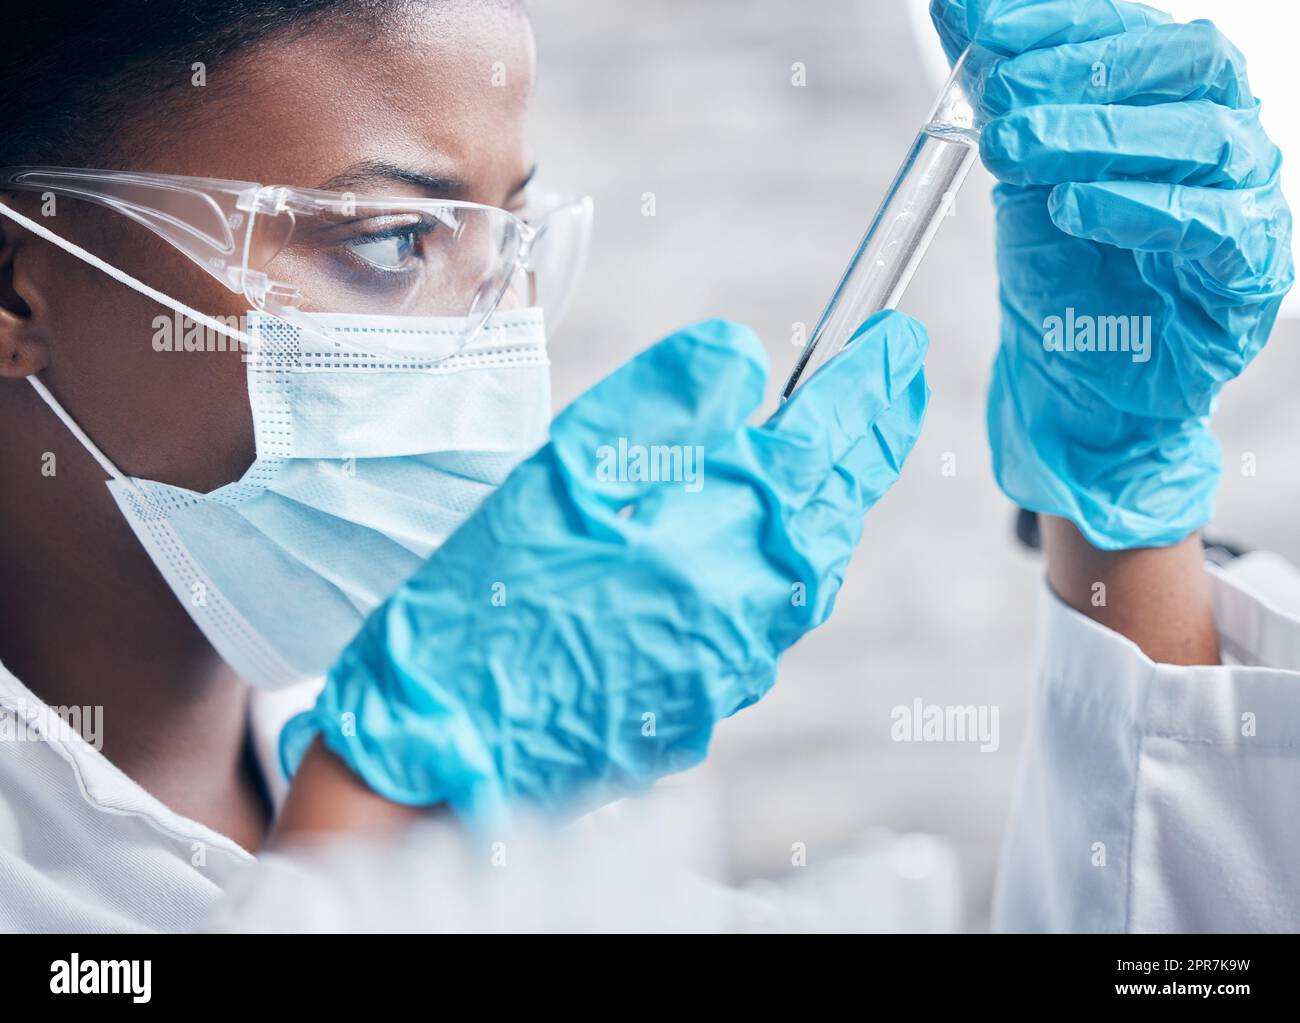 Un autre jour, un autre échantillon. Un jeune scientifique travaillant avec des tubes à essai dans un laboratoire. Banque D'Images